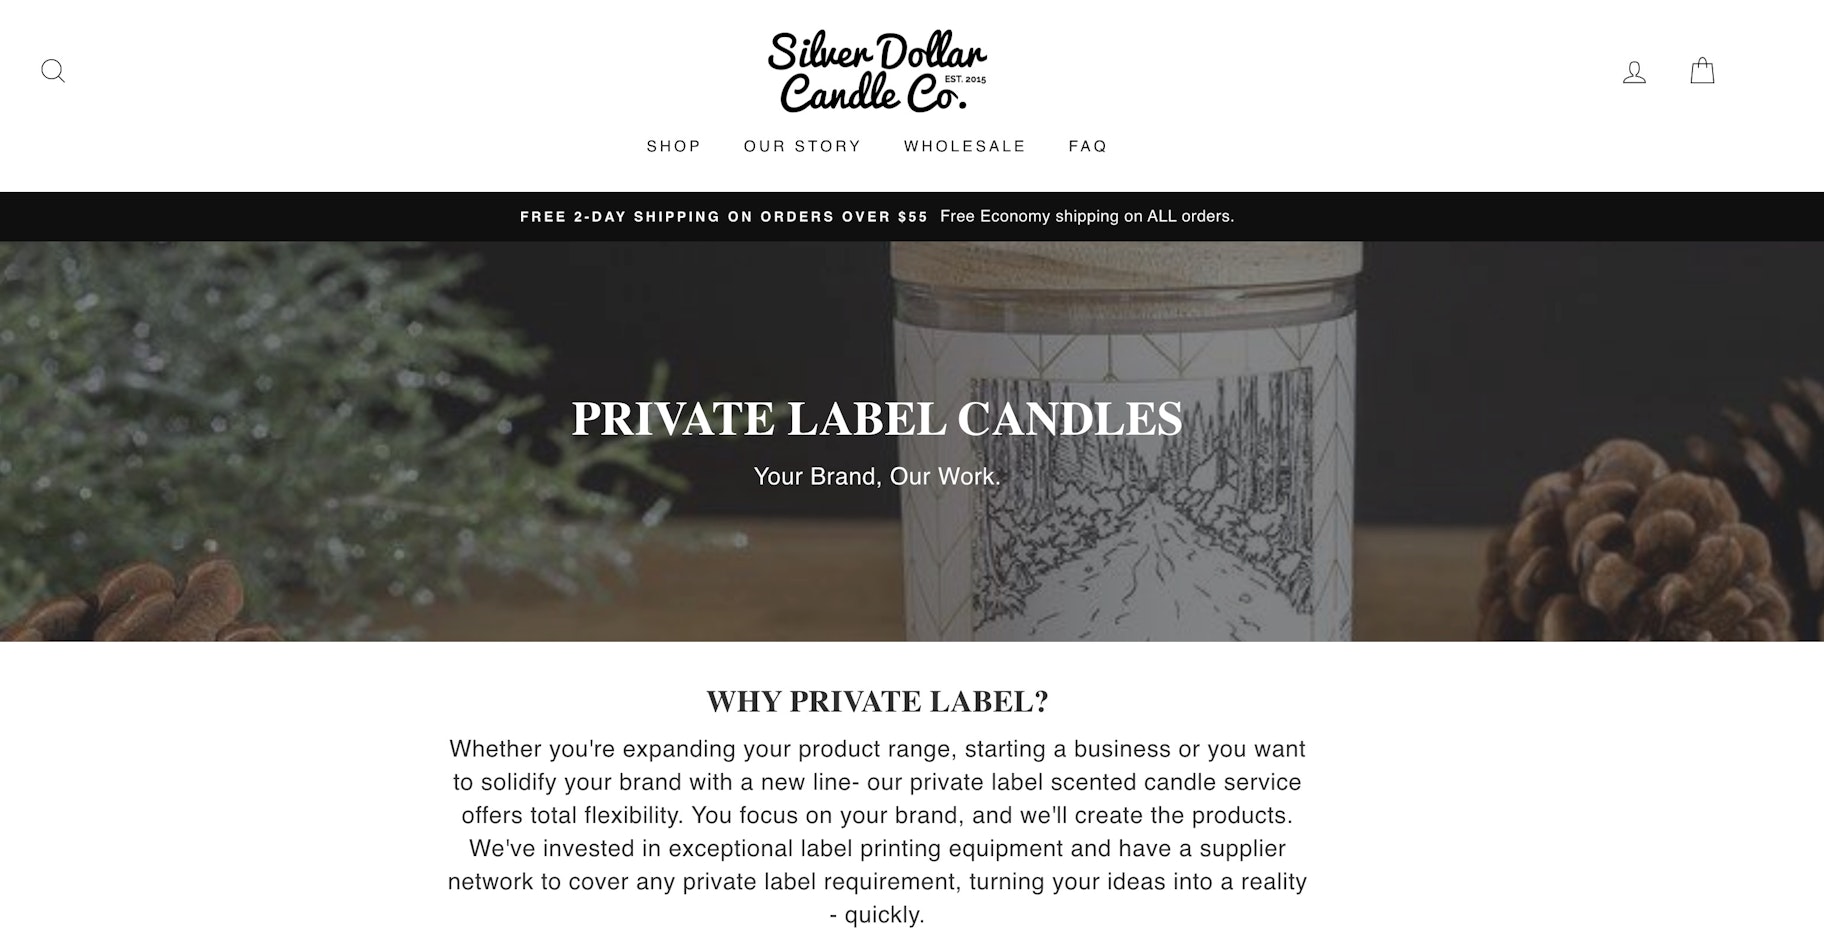 производитель свечей под частной торговой маркой: Silver Dollar Candle Co.